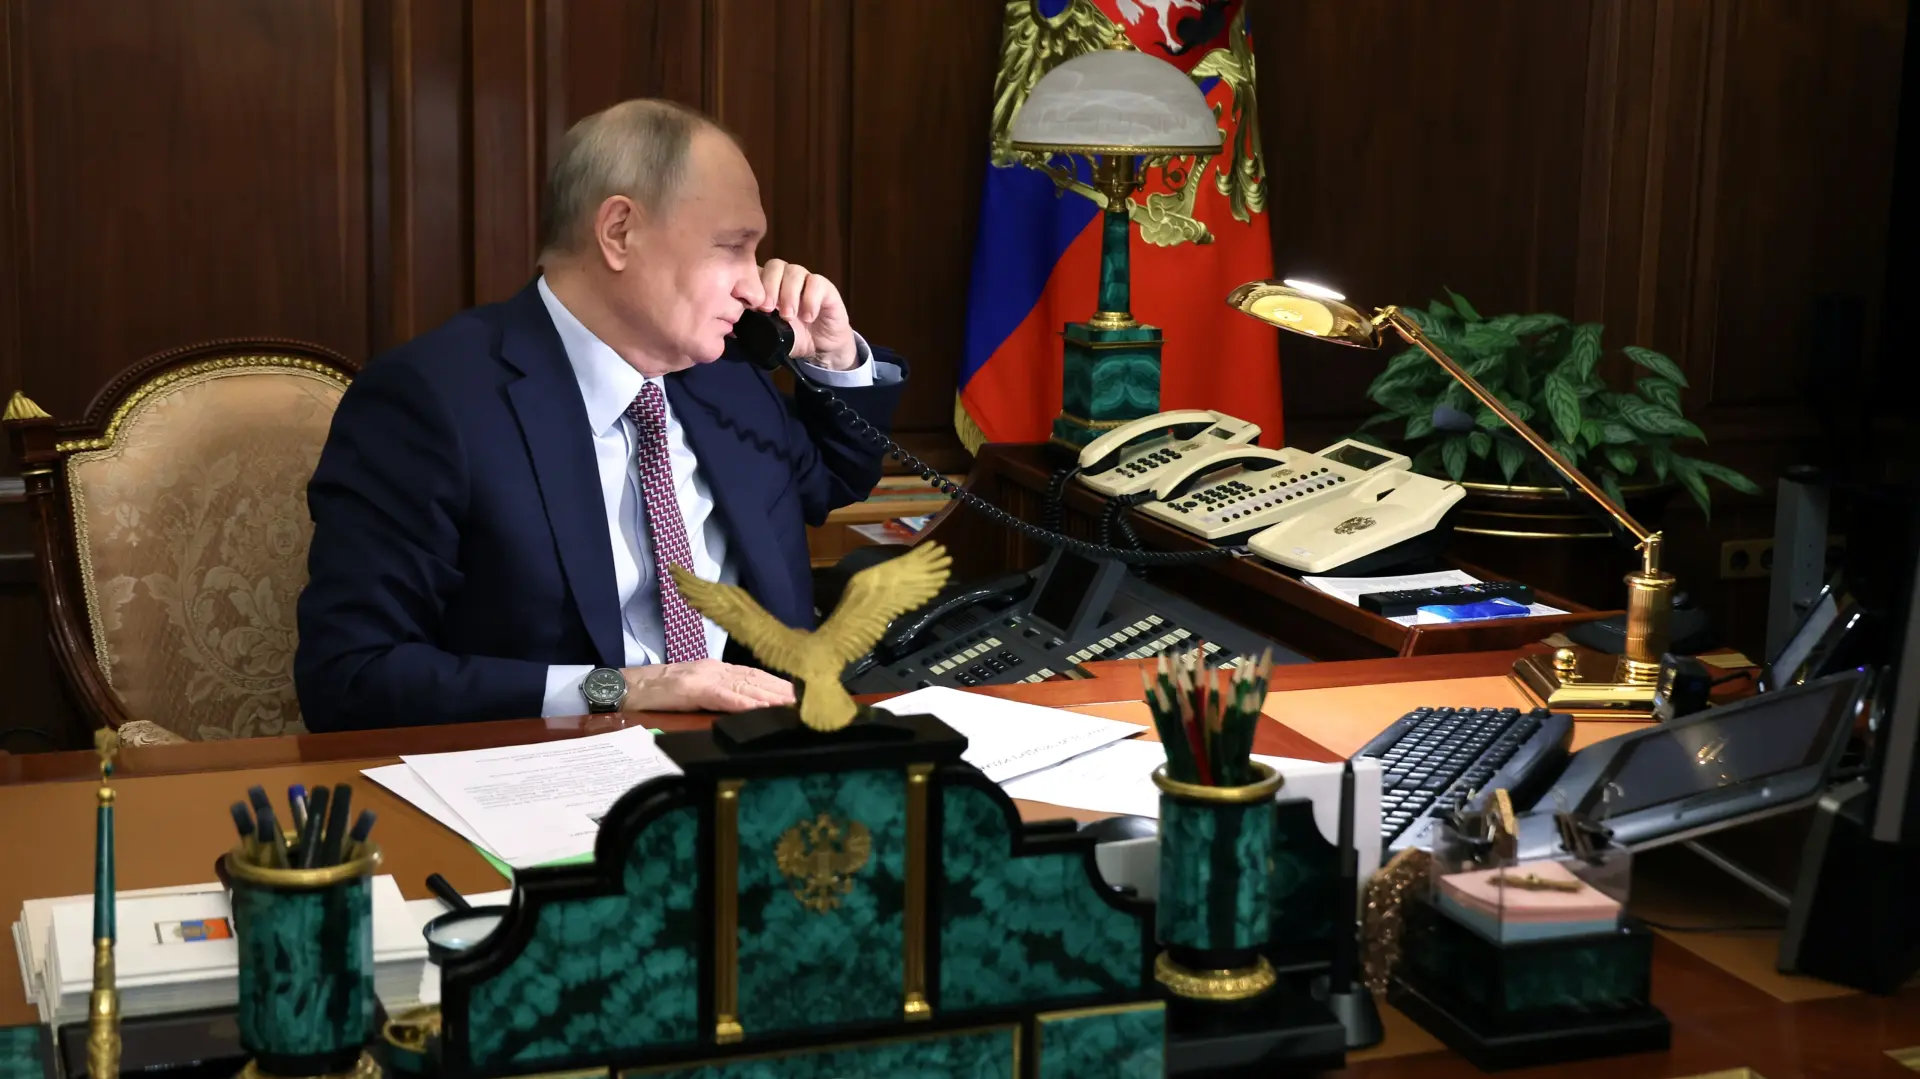 vladimir putin, 21 dec 2023 - Mikhail Klimentyev, Sputnik, Kremlin Pool Photo via AP Tanjug-6584414c4795c.webp